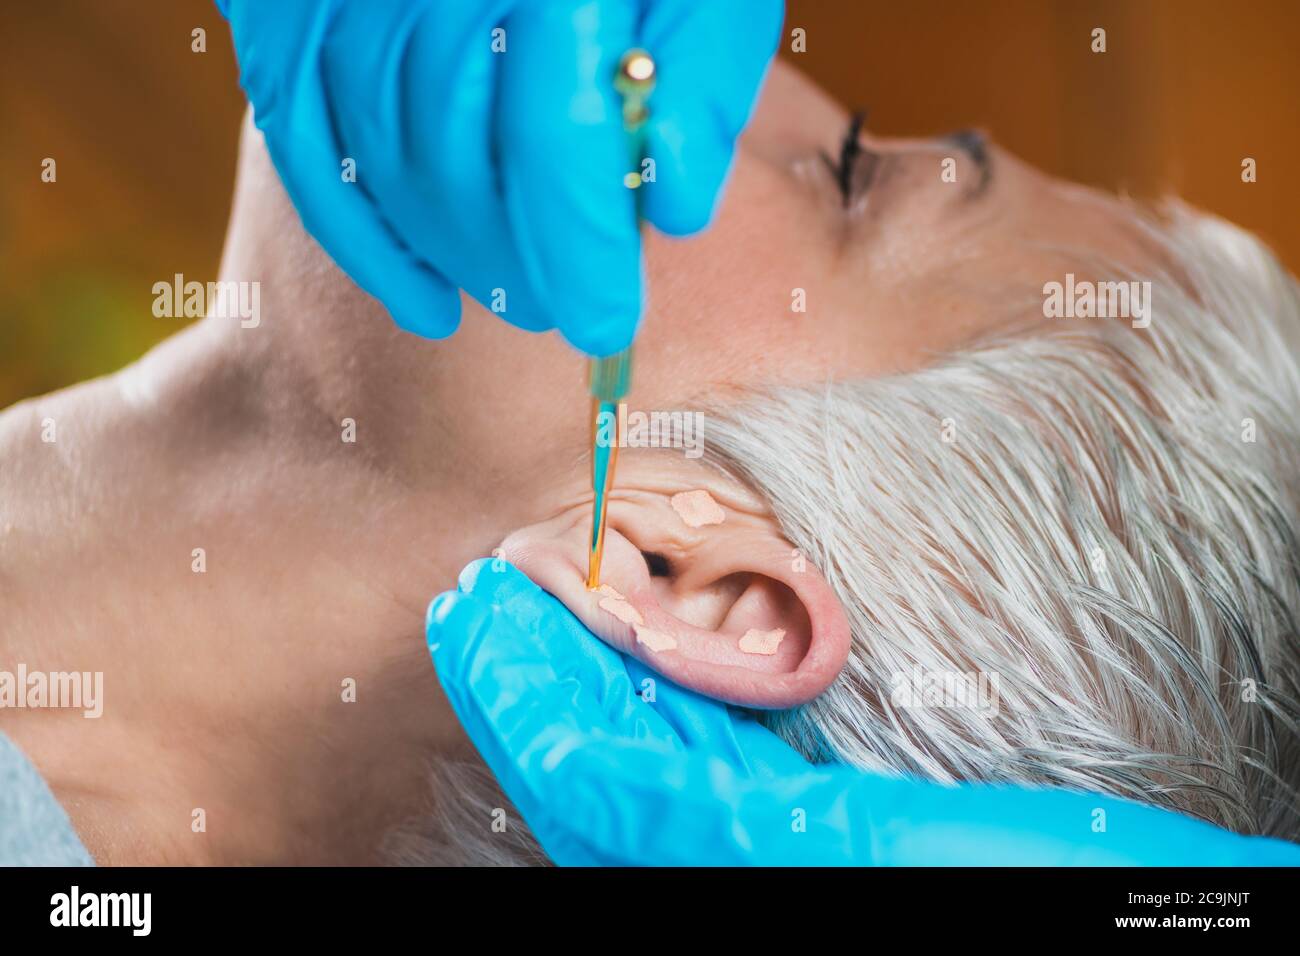 Auriculothérapie, ou traitement auriculaire sur l'oreille humaine, gros  plan. Main du thérapeute appliquant l'autocollant de la graine d'oreille d' acupuncture avec une pince à épiler Photo Stock - Alamy